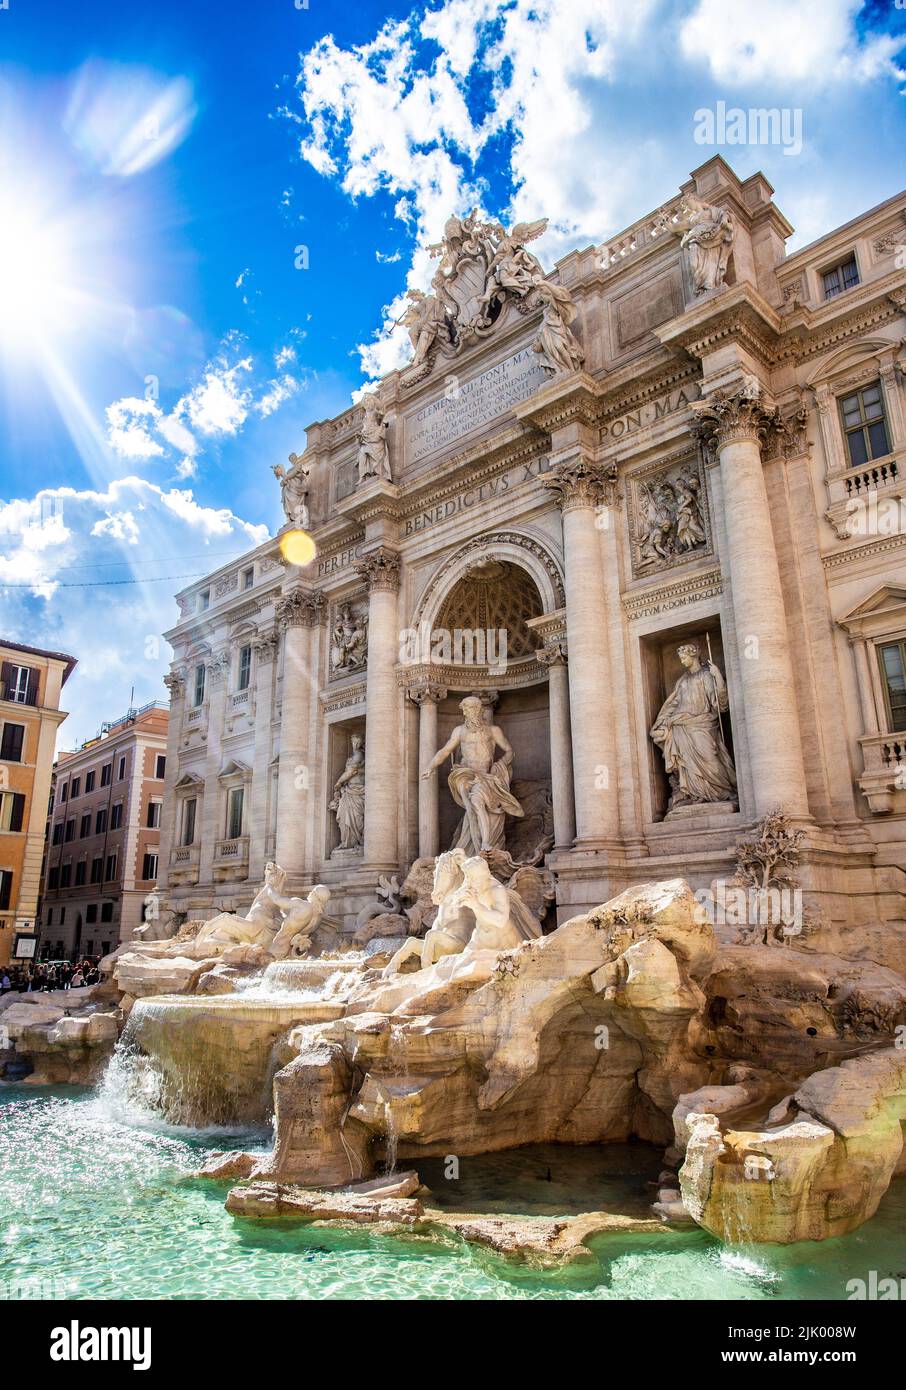 La famosa fontana di trevi a roma, un bellissimo punto di riferimento culturale per i turisti. Scultura in stile barocco architettura antica. Foto Stock